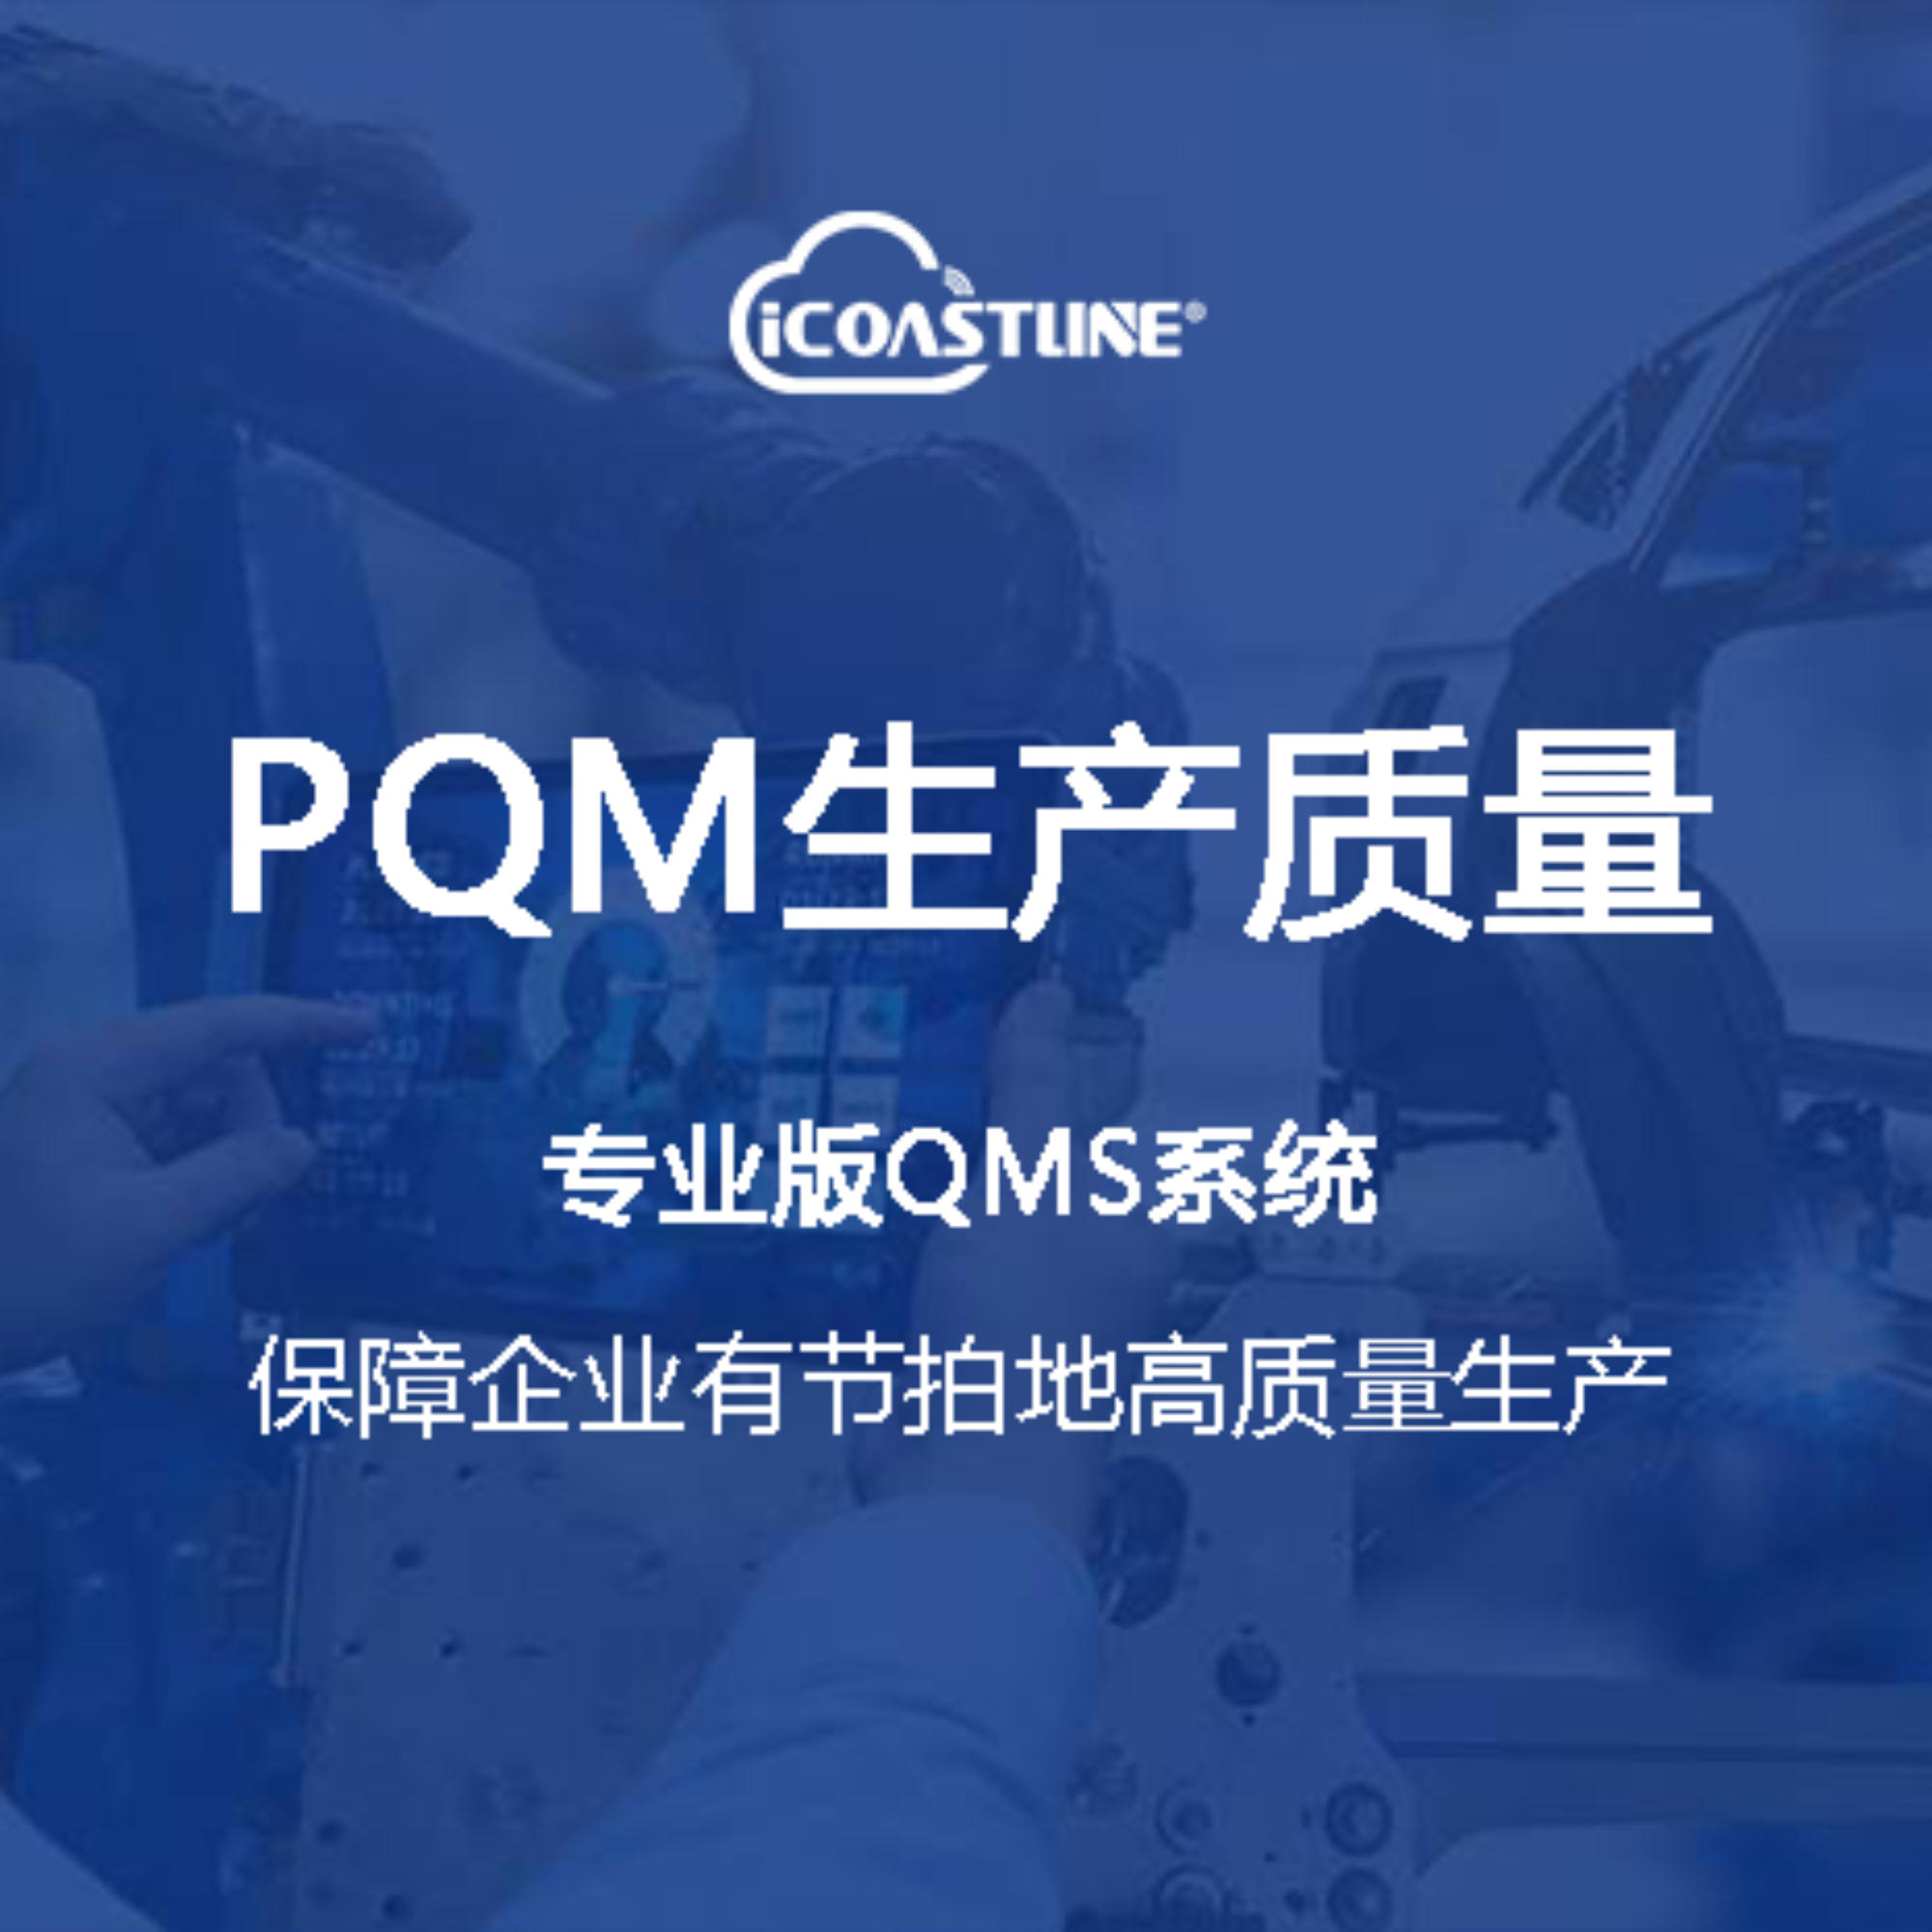 海岸线链企云平台PQM生产质量